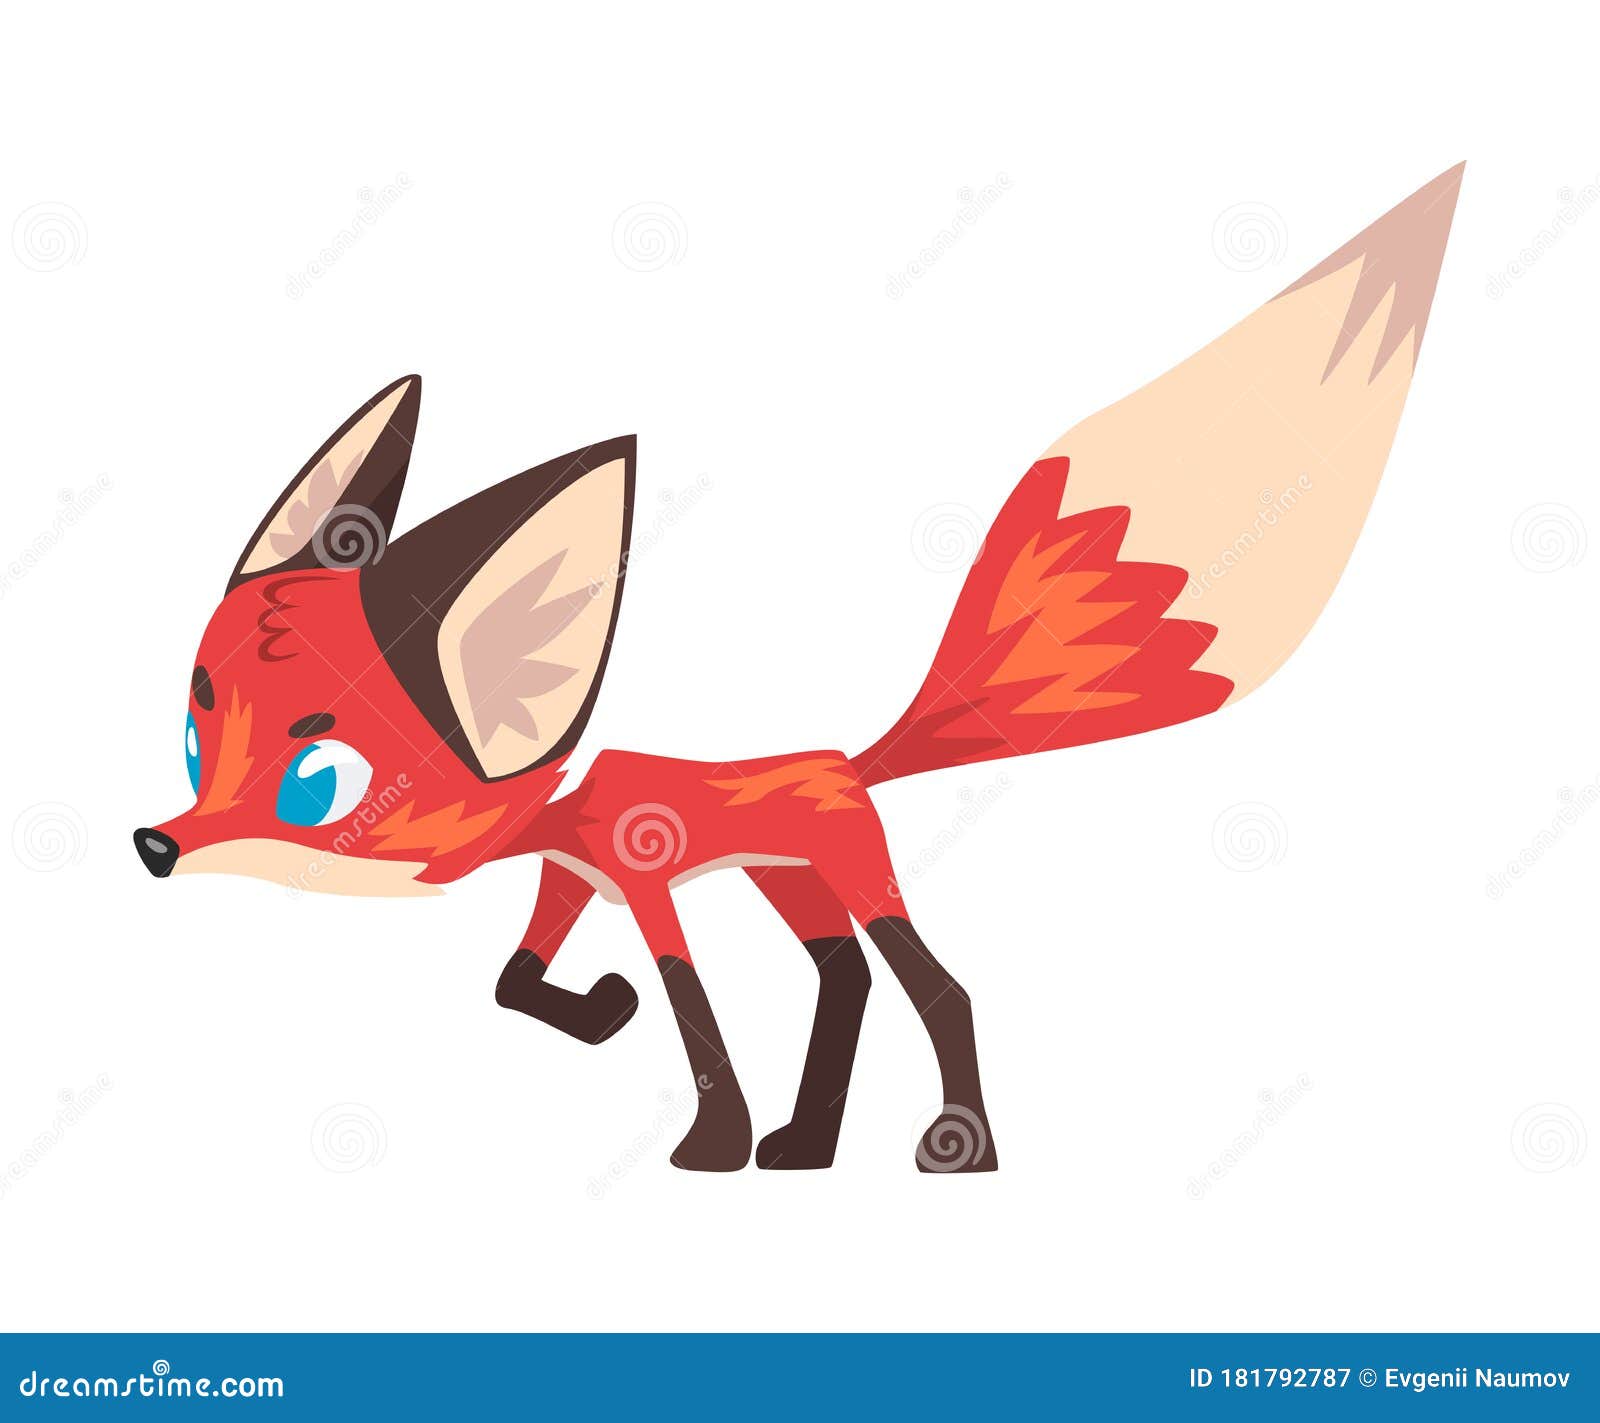 Blue eyed fox